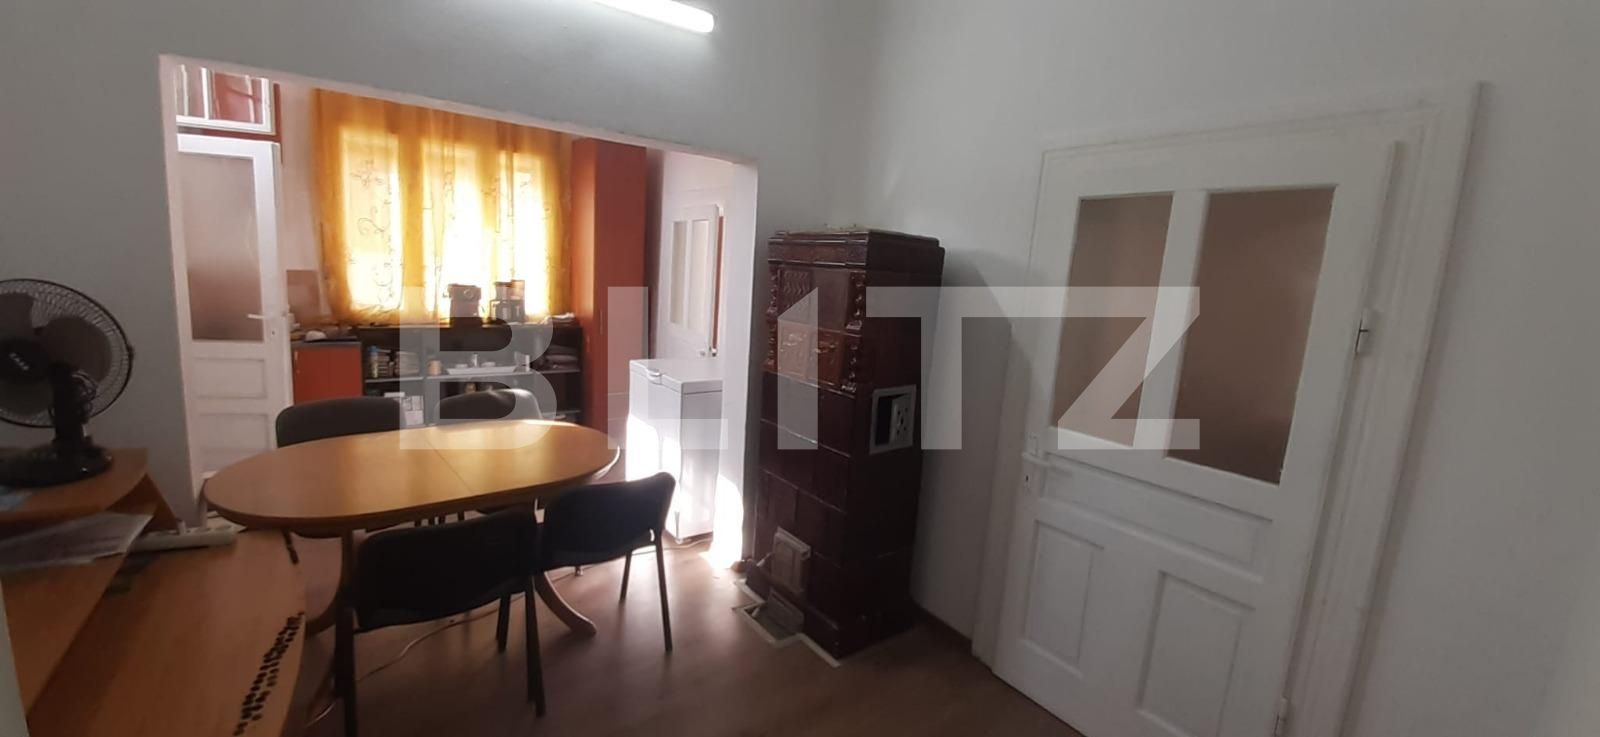 Apartament la casa, 70 mp, zona Calea Clujului